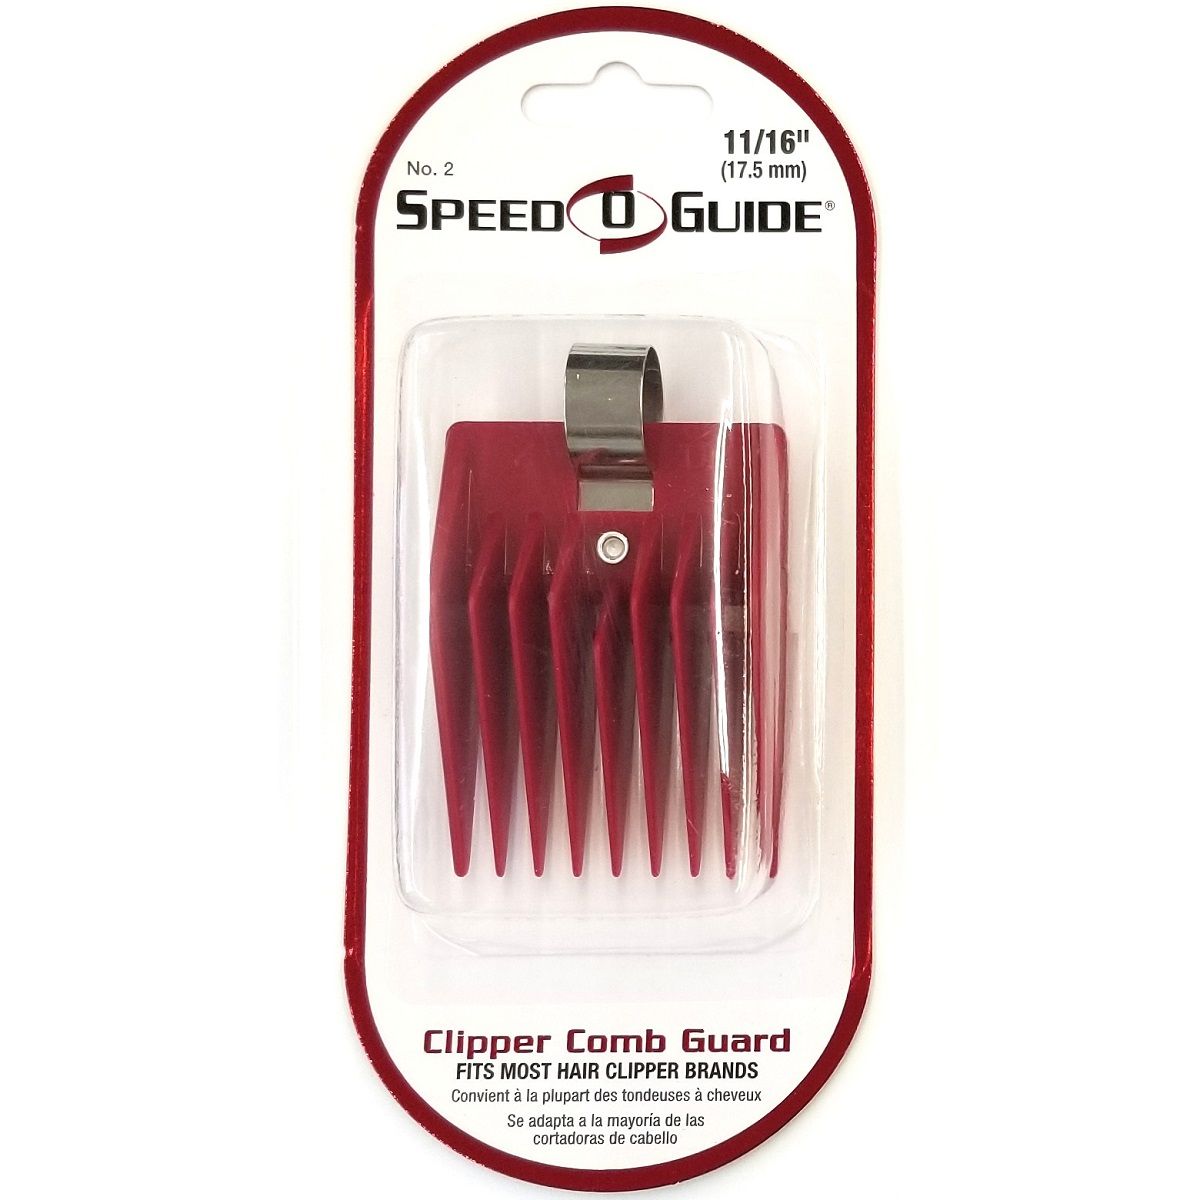 Spilo Speed-O-Guide Clipper Comb Attachment [#2] 11/16" #18705+